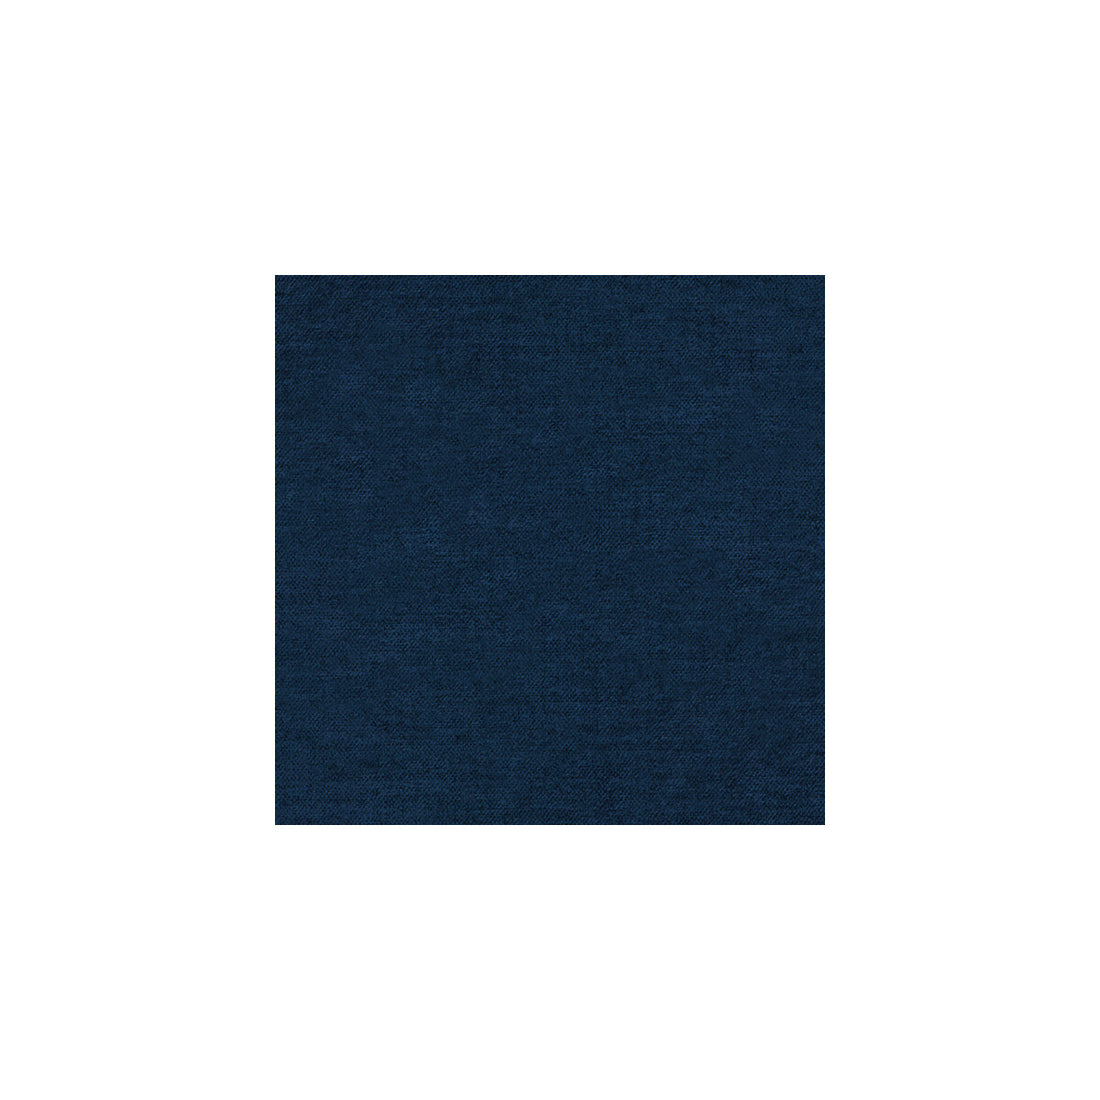 Kravet Basics fabric in 31776-50 color - pattern 31776.50.0 - by Kravet Basics